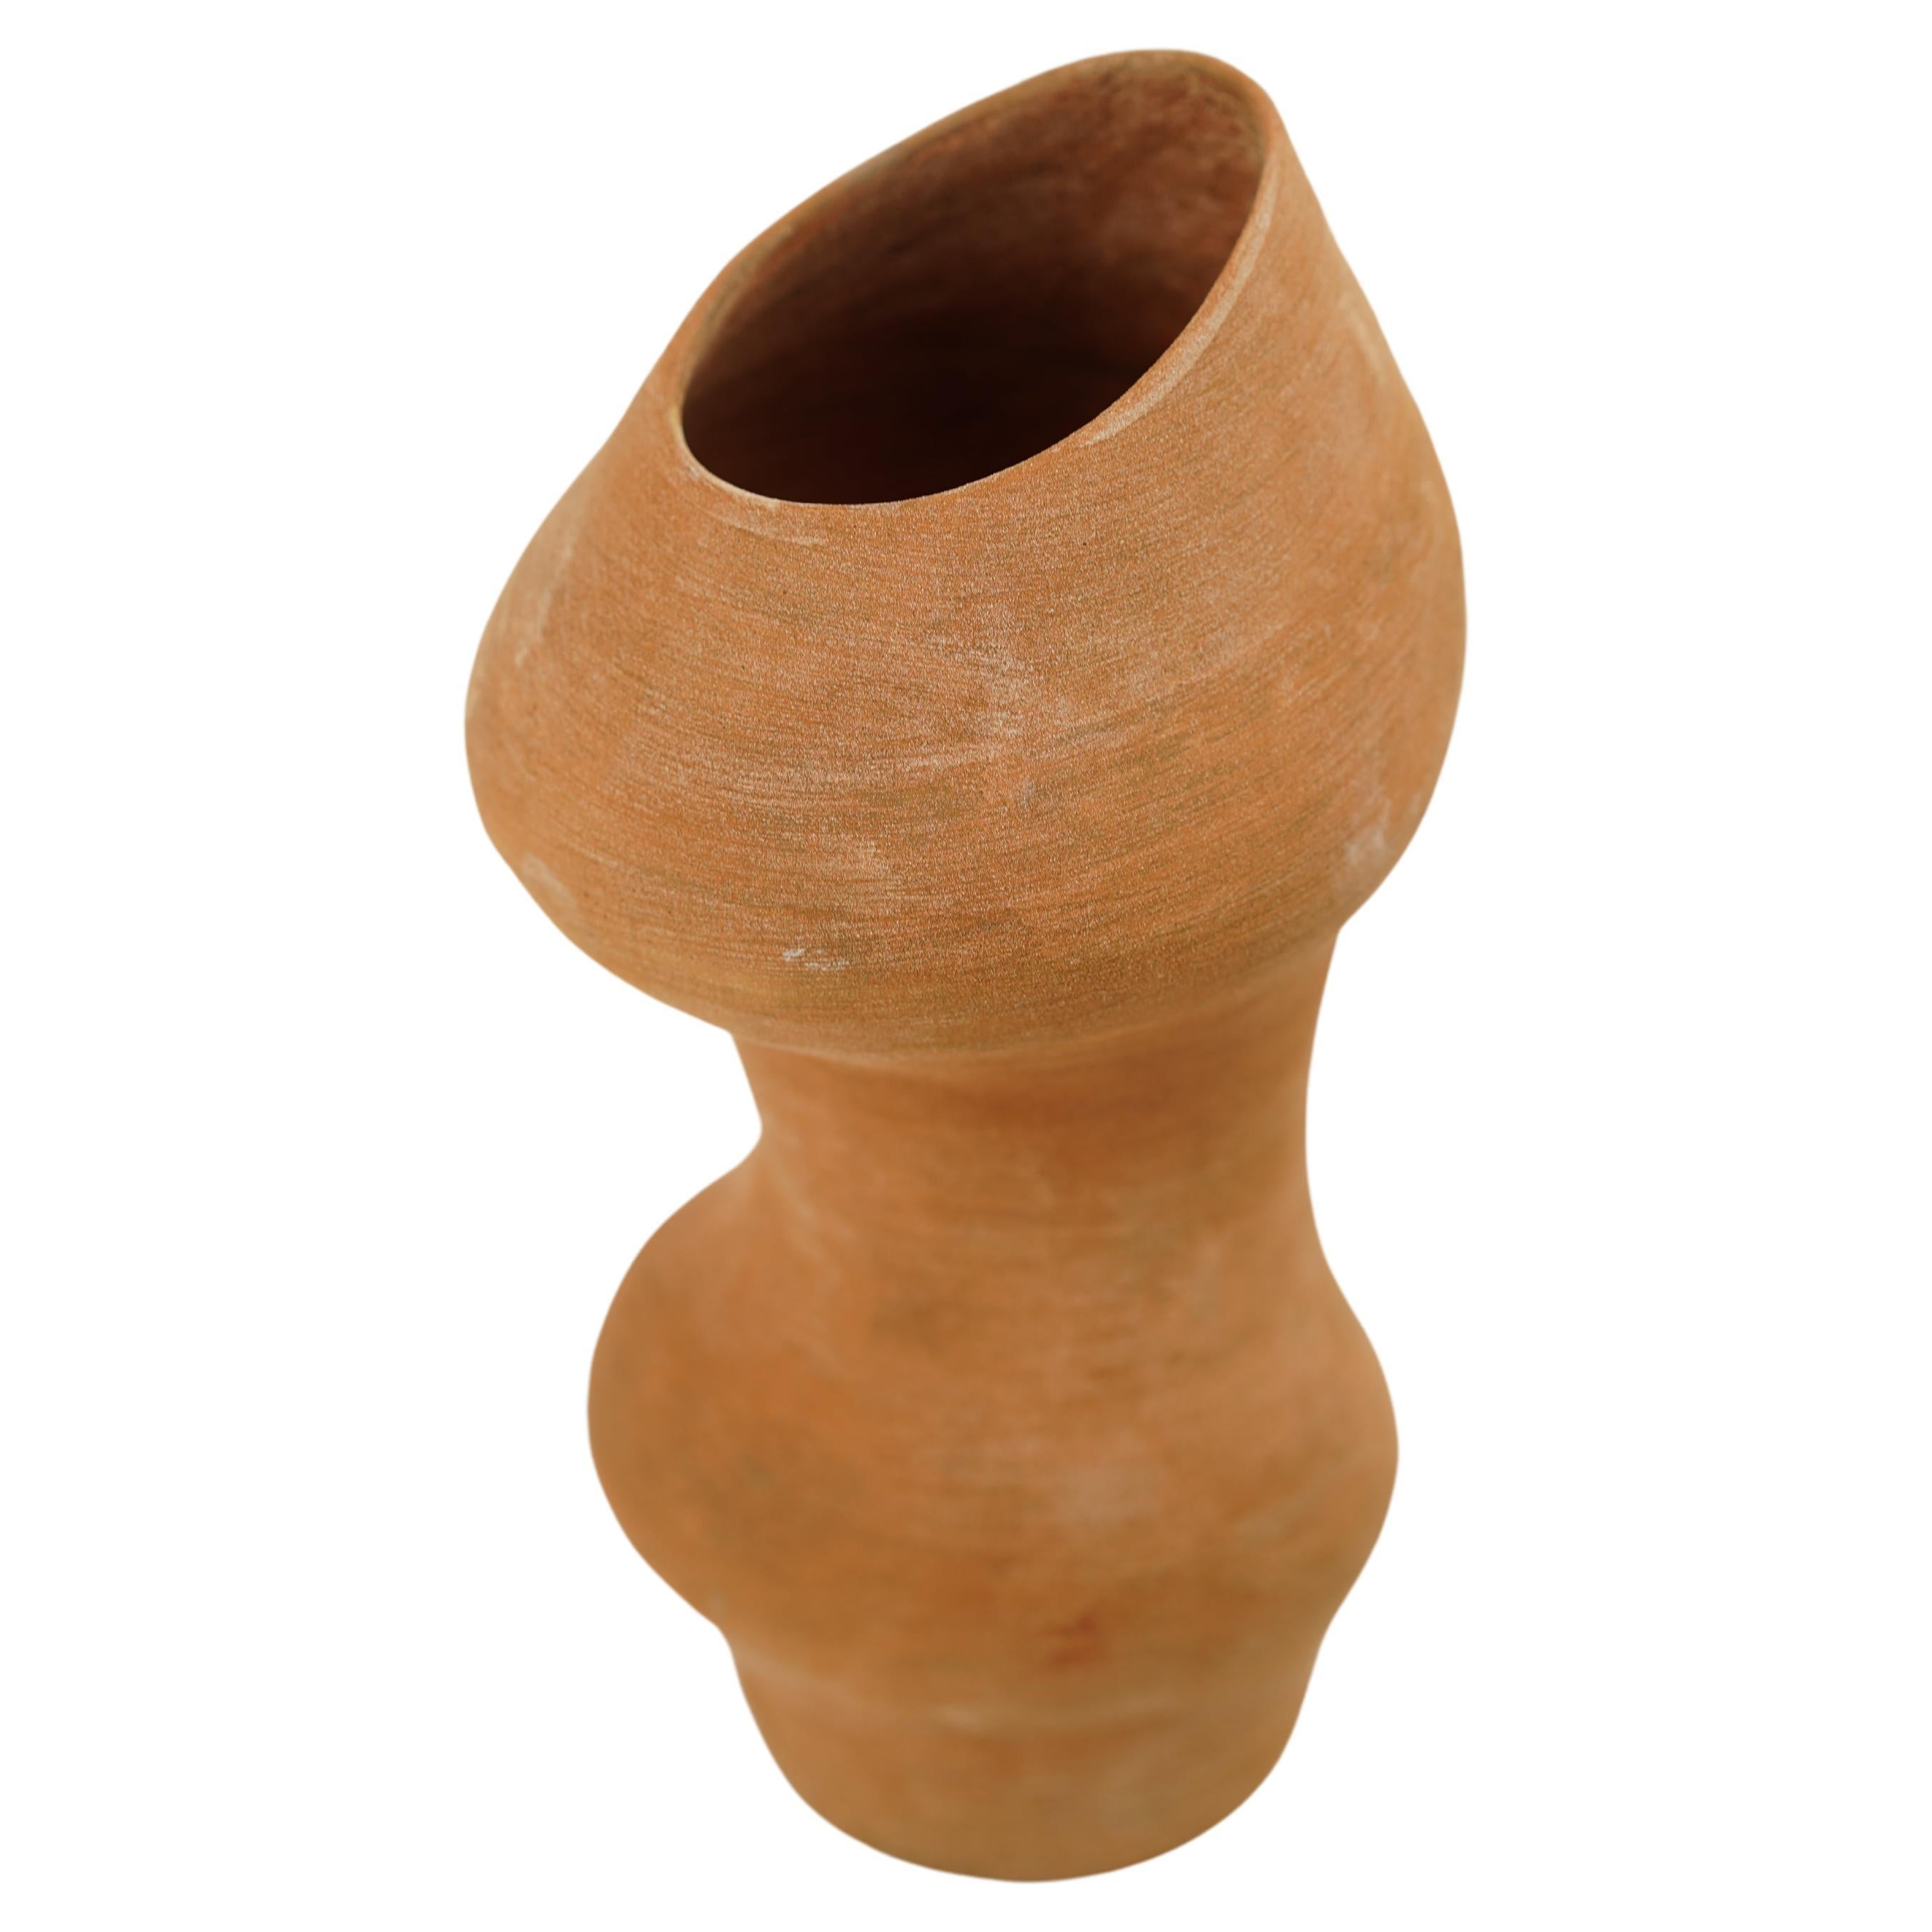 Vase en sable organique de Canyon, disponible en 3 tailles